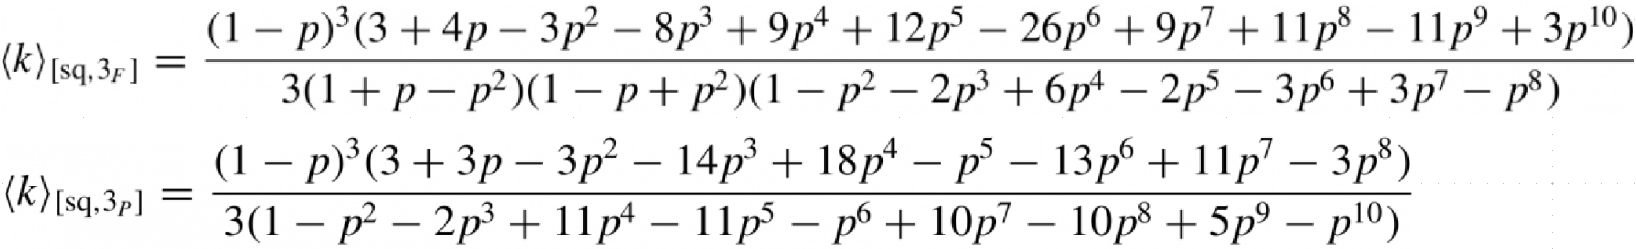 (十月) 張書銓教授討論邊滲流理論中平均叢集數的精確解。